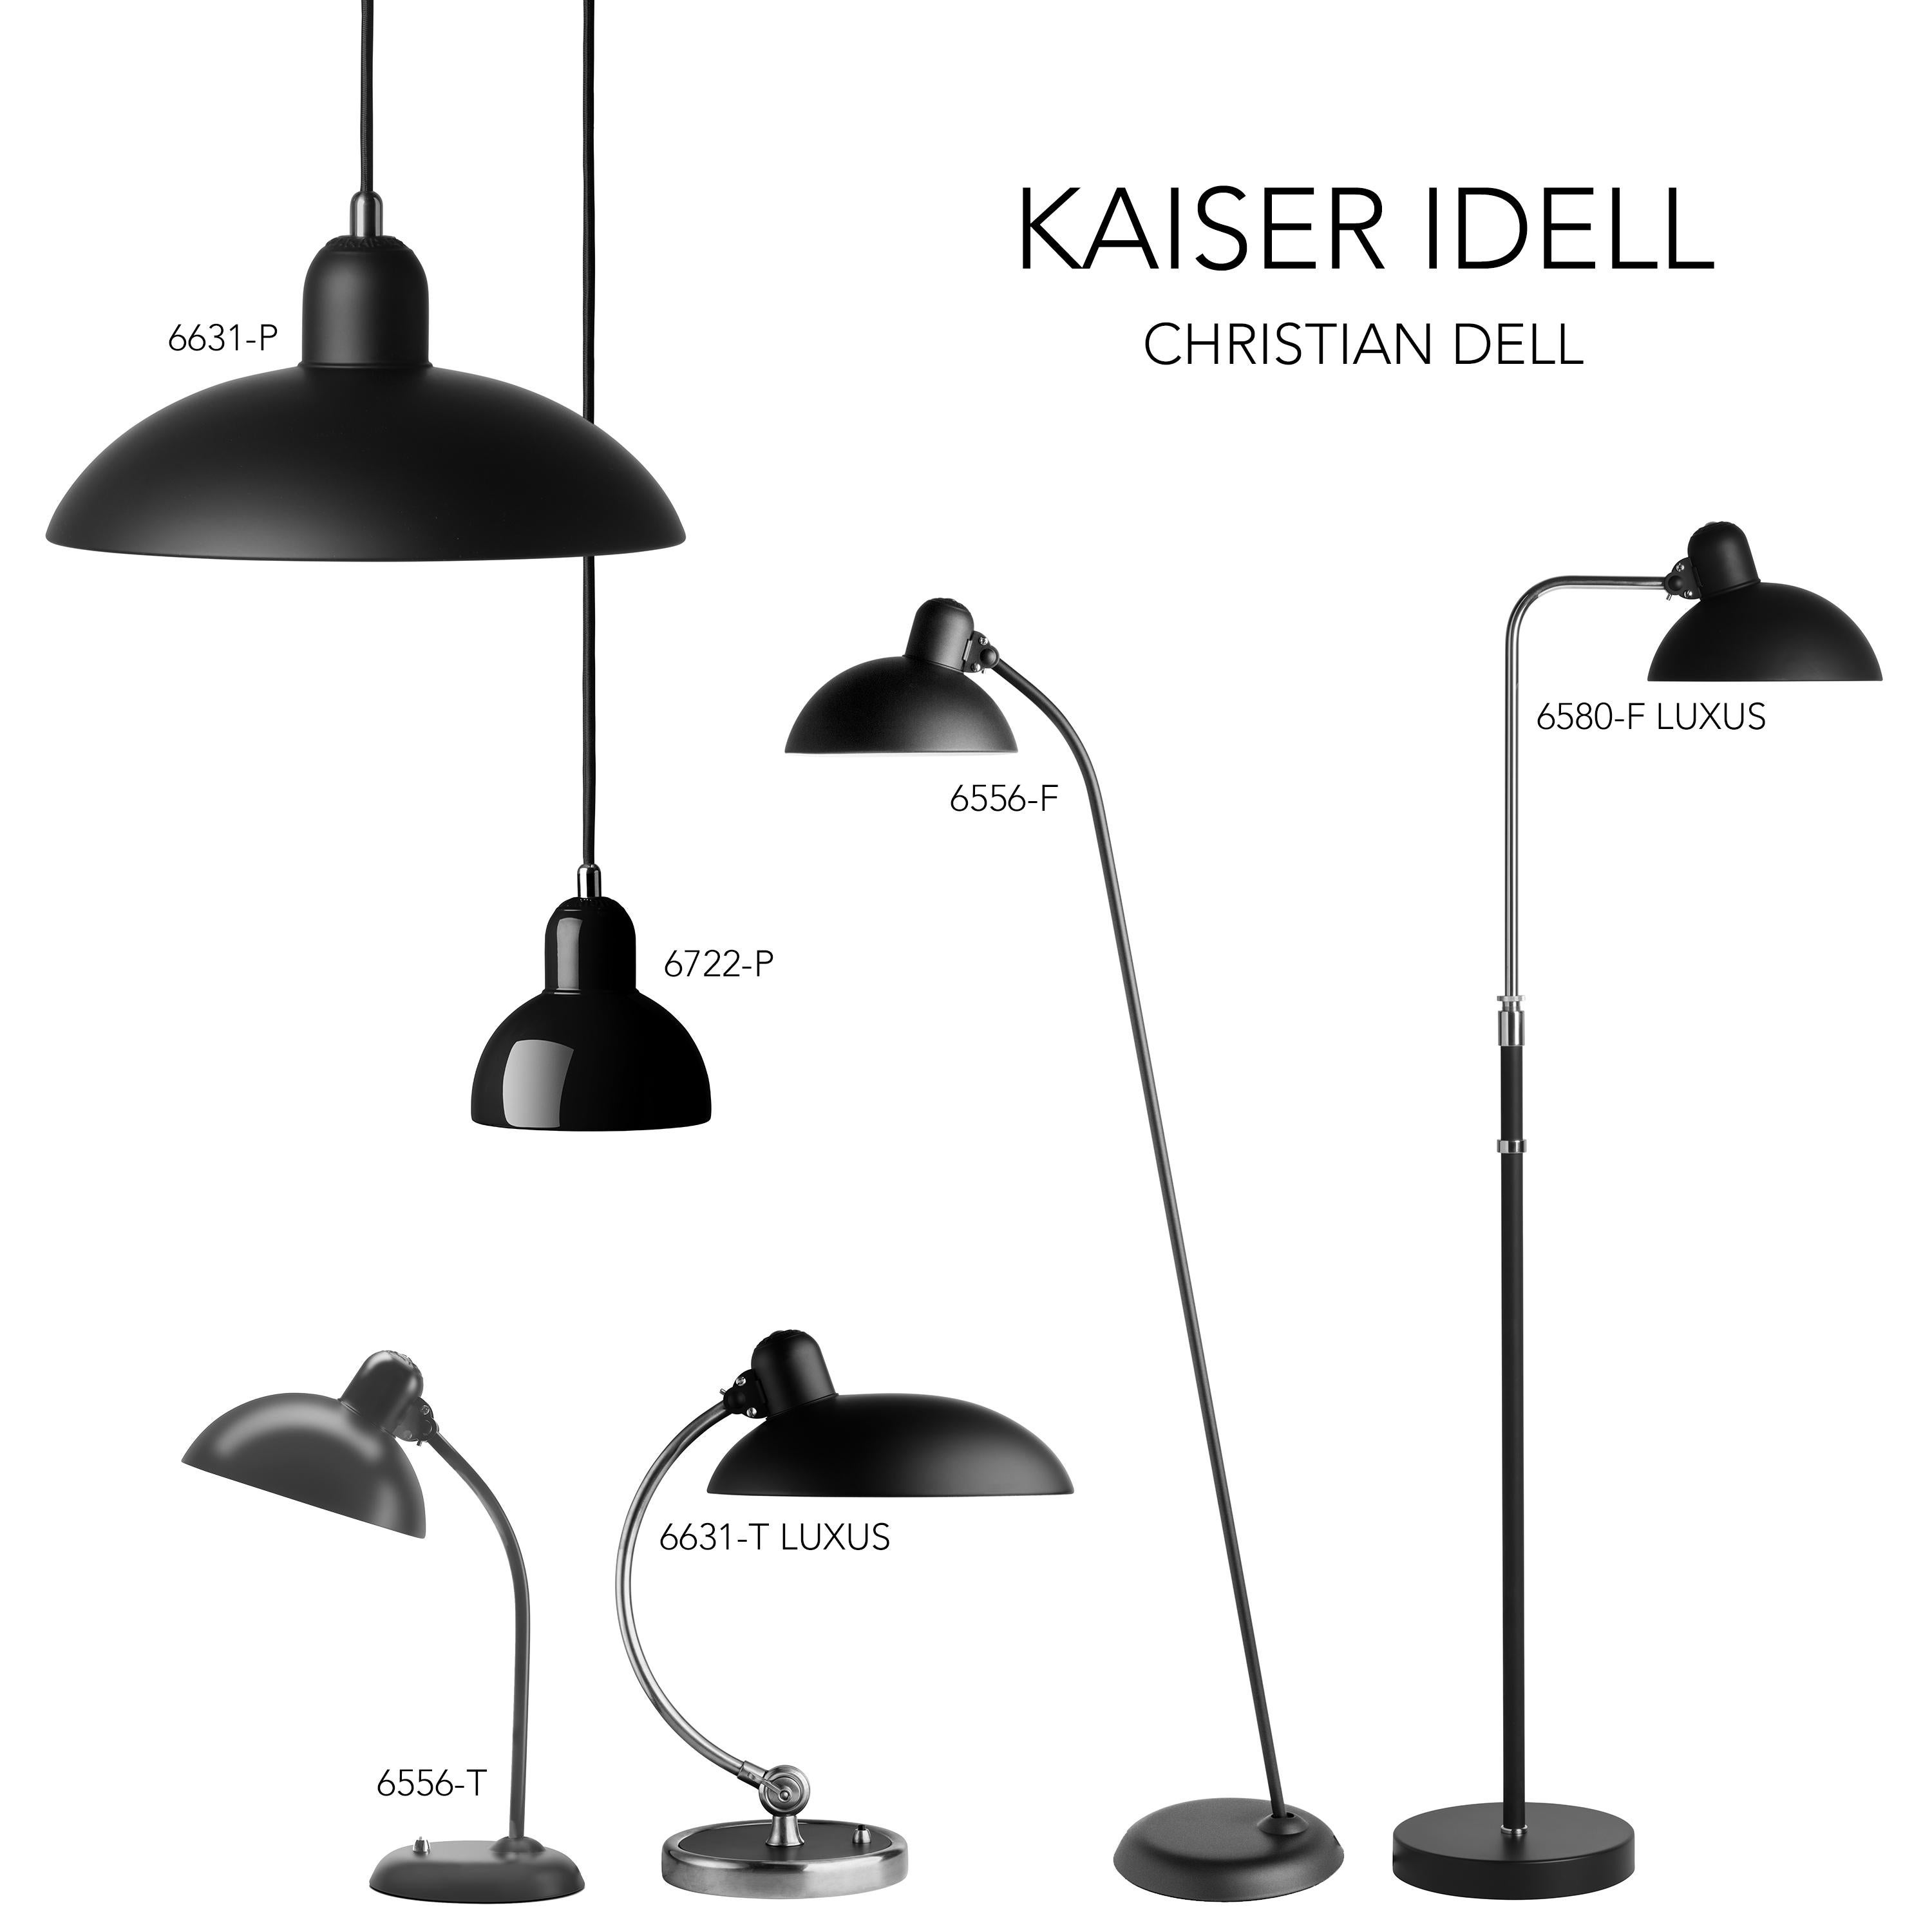 Christian Dell 'Kaiser Idell 6722-P' Pendant for Fritz Hansen in Russet Red For Sale 9